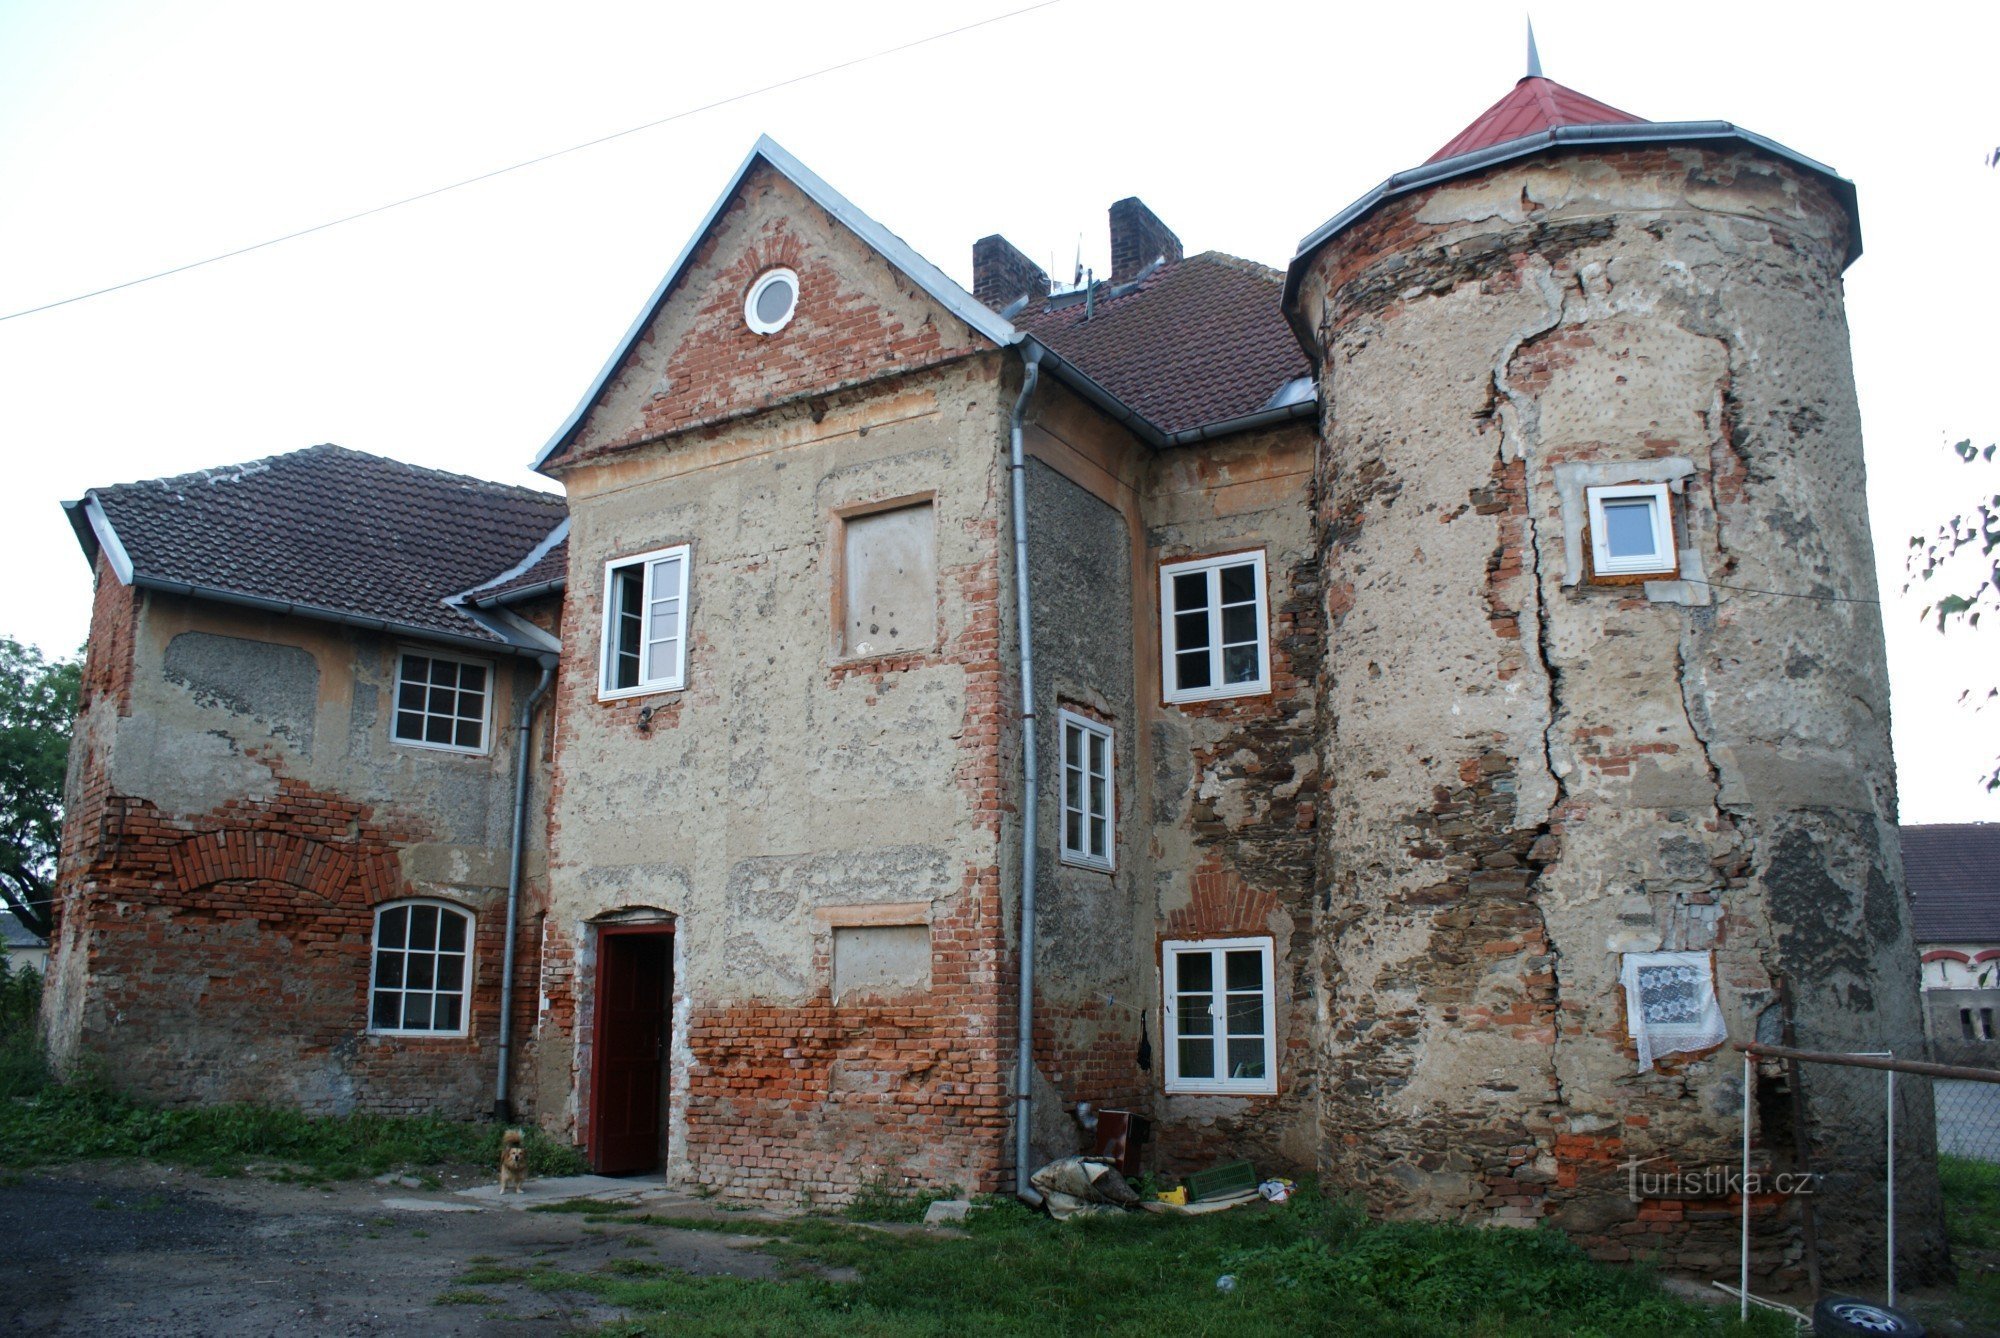 Schüler in Čáslav - Festung